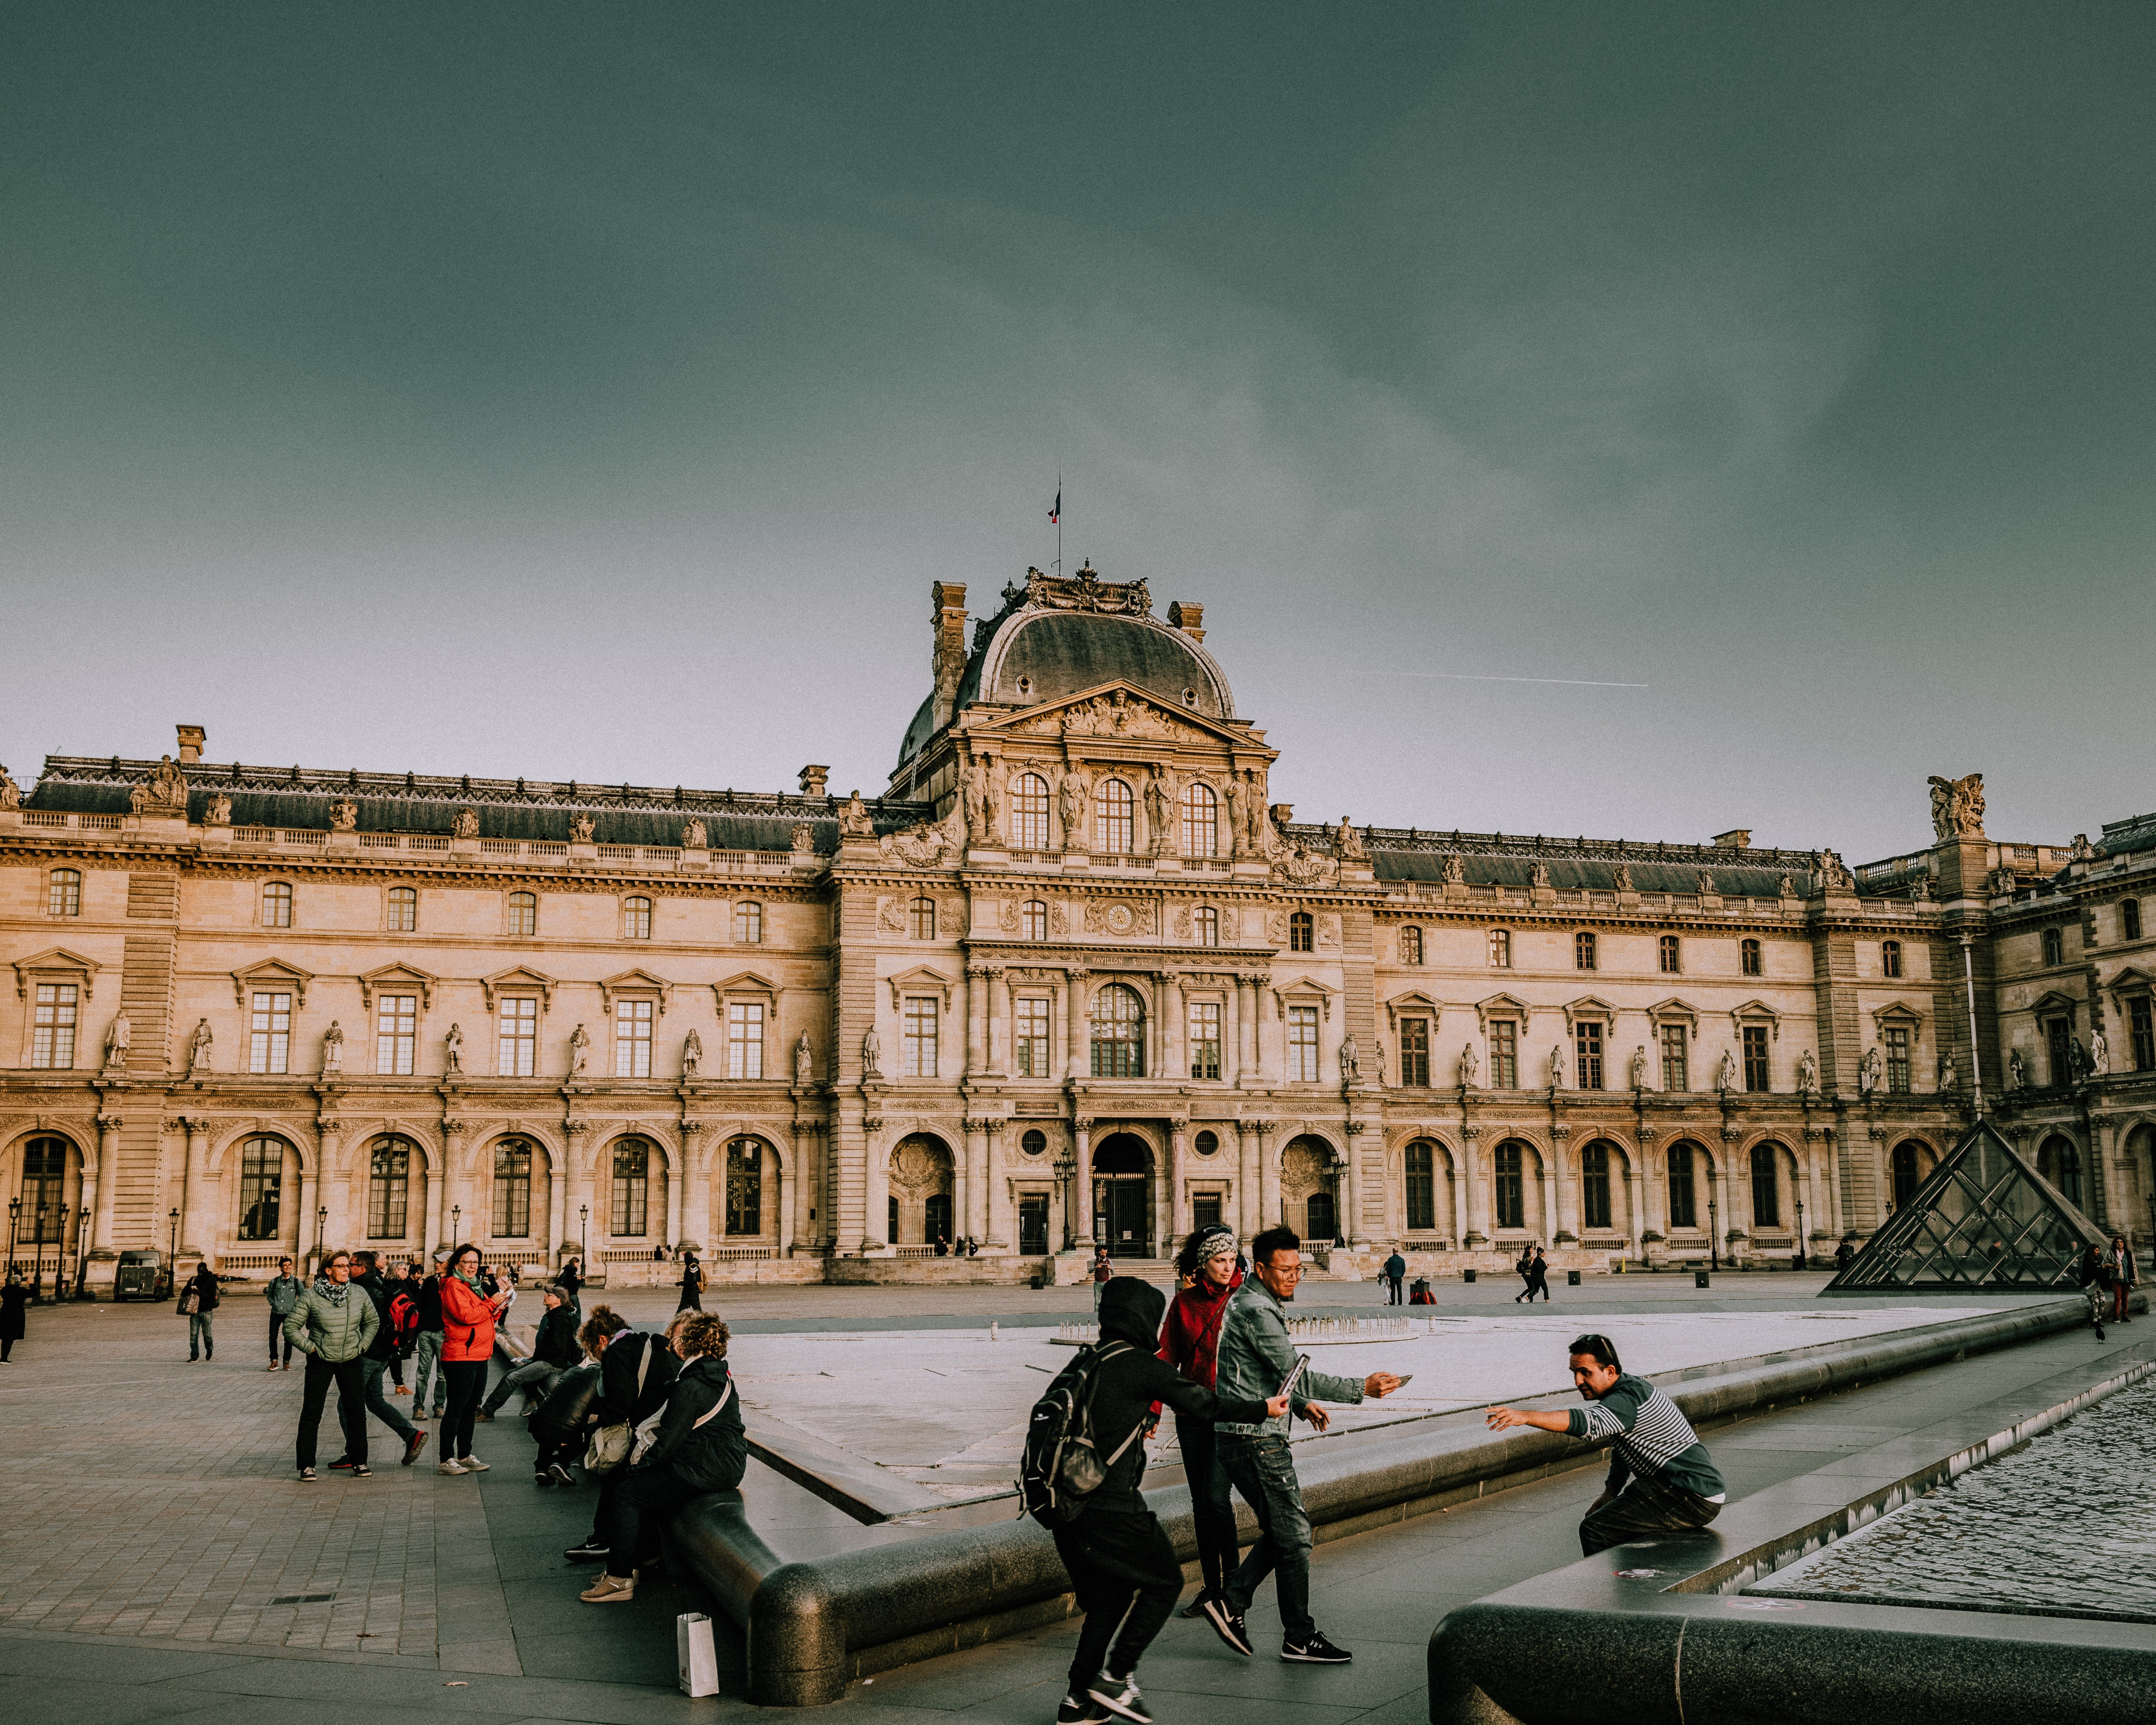 Turistas tomando fotos fuera de la foto del Louvre